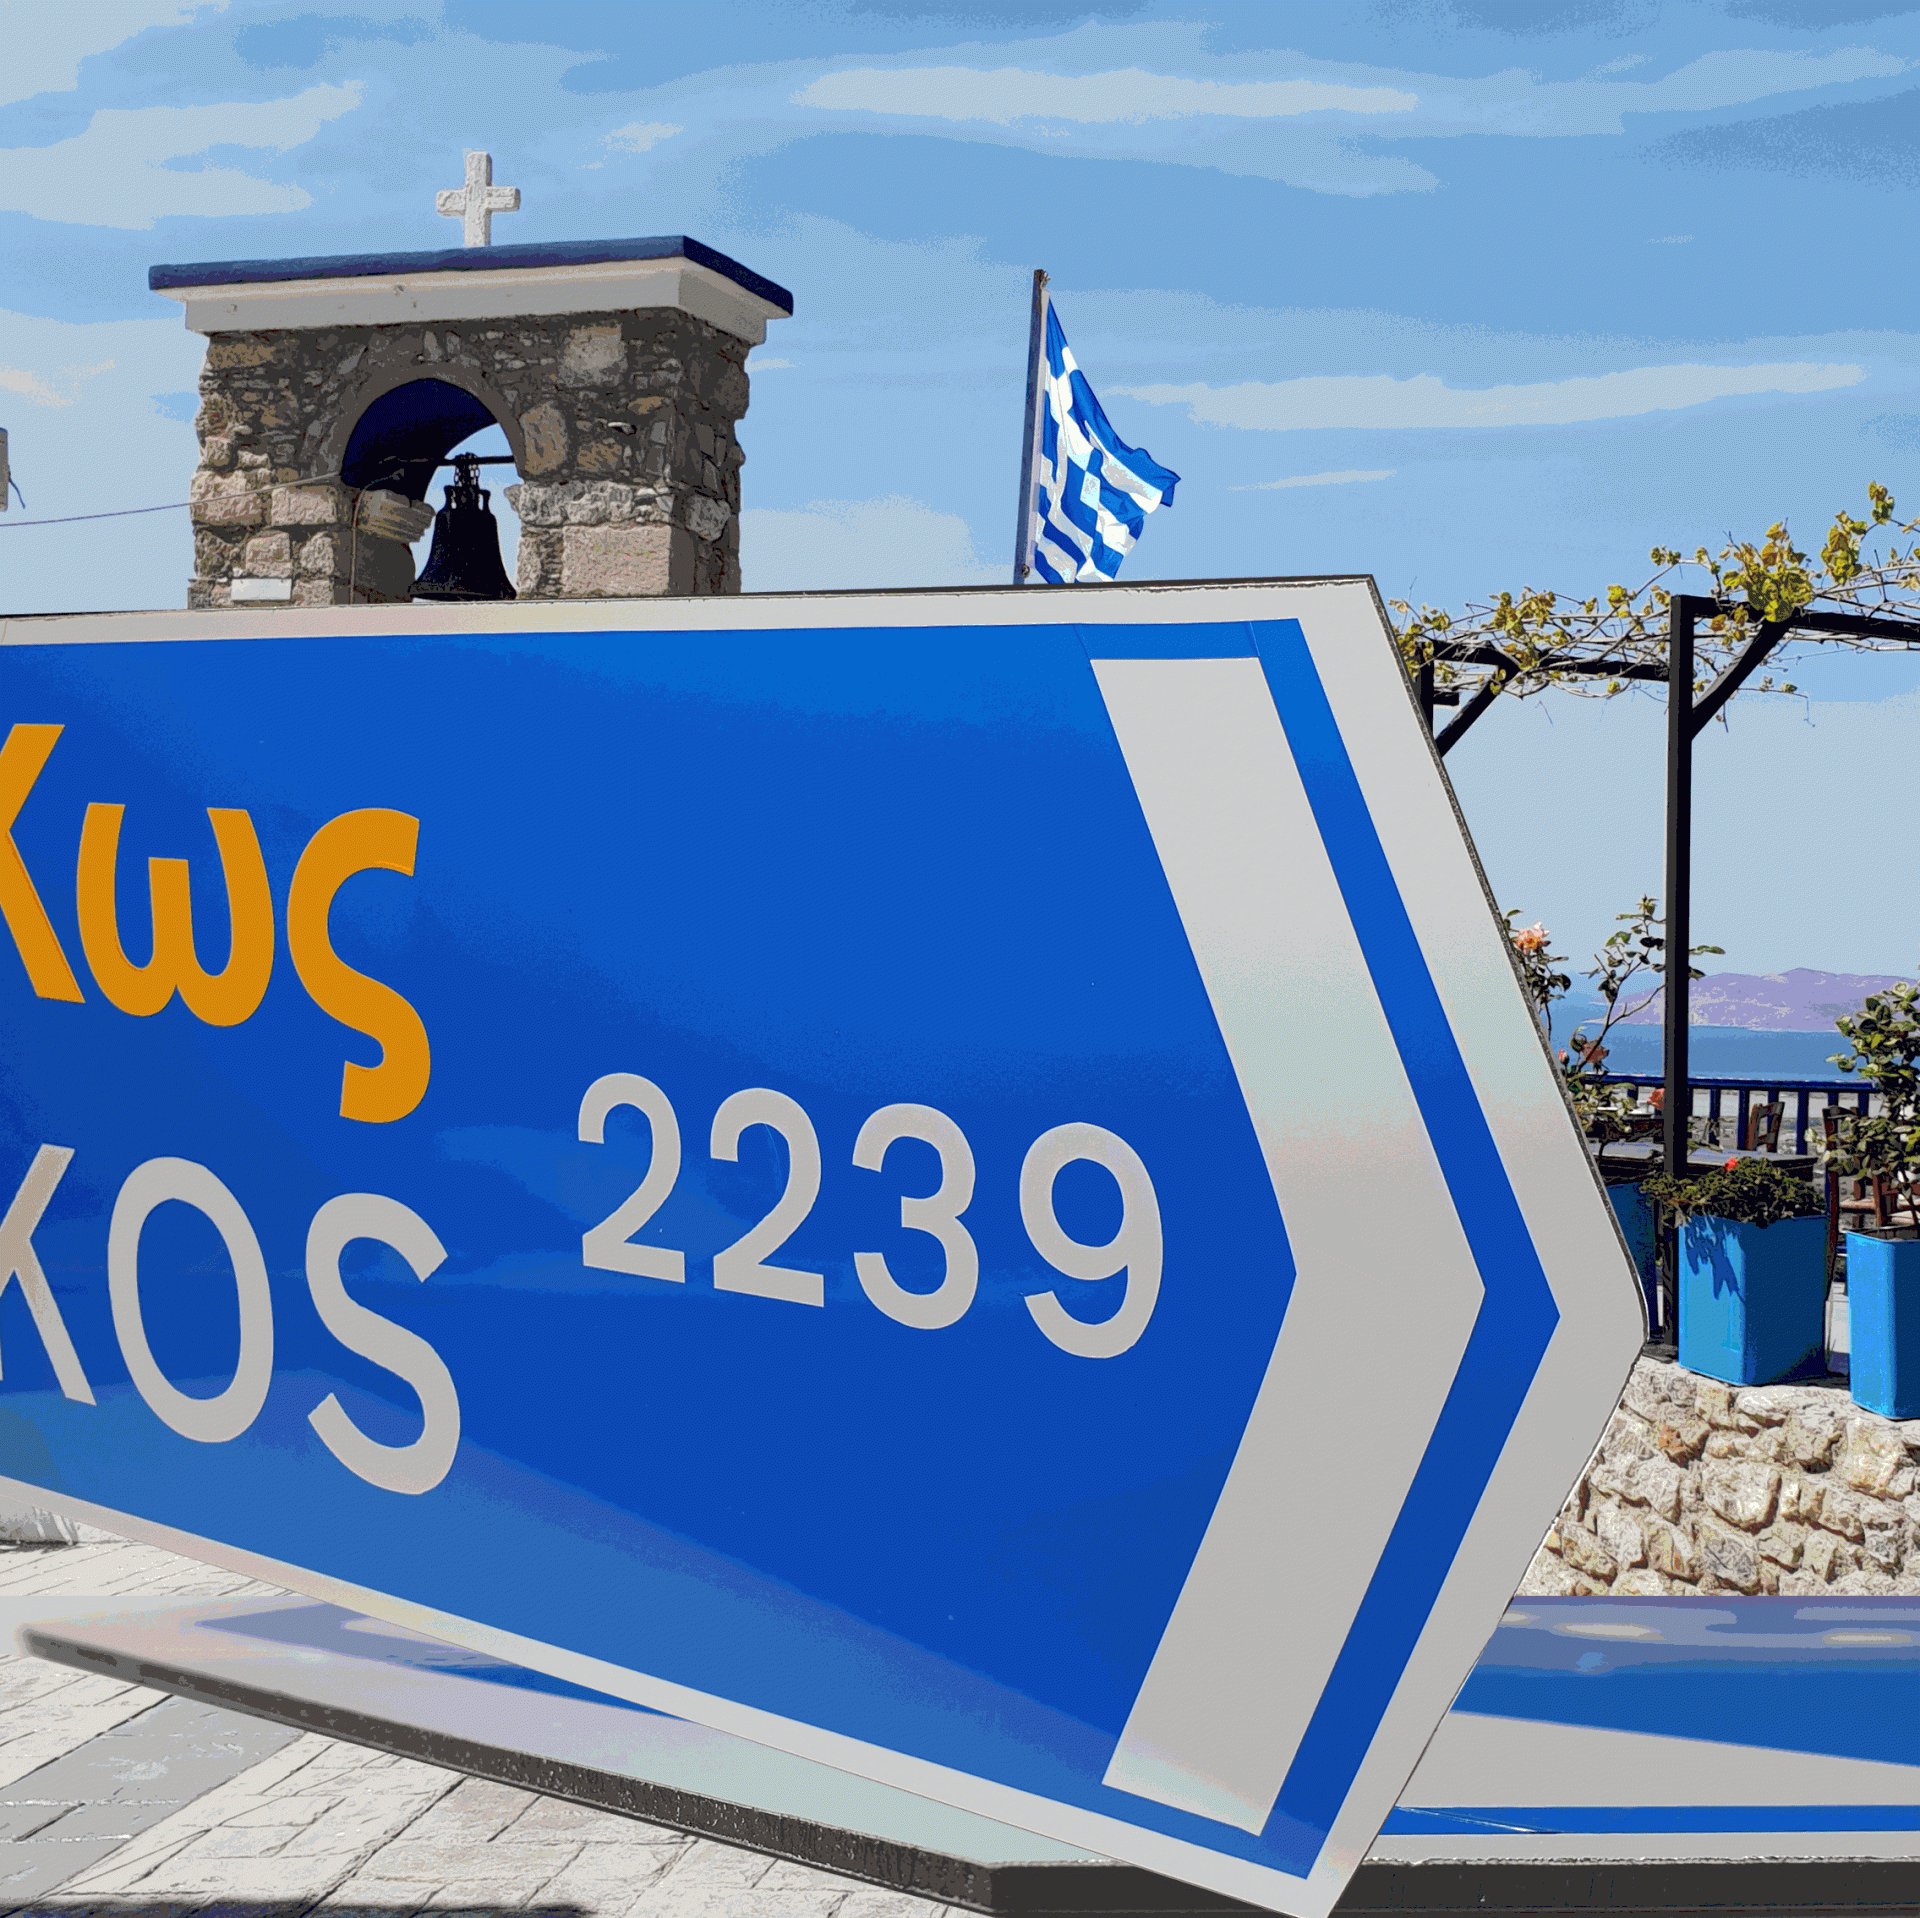 Richtungspfeil "Griechenland/Greece"